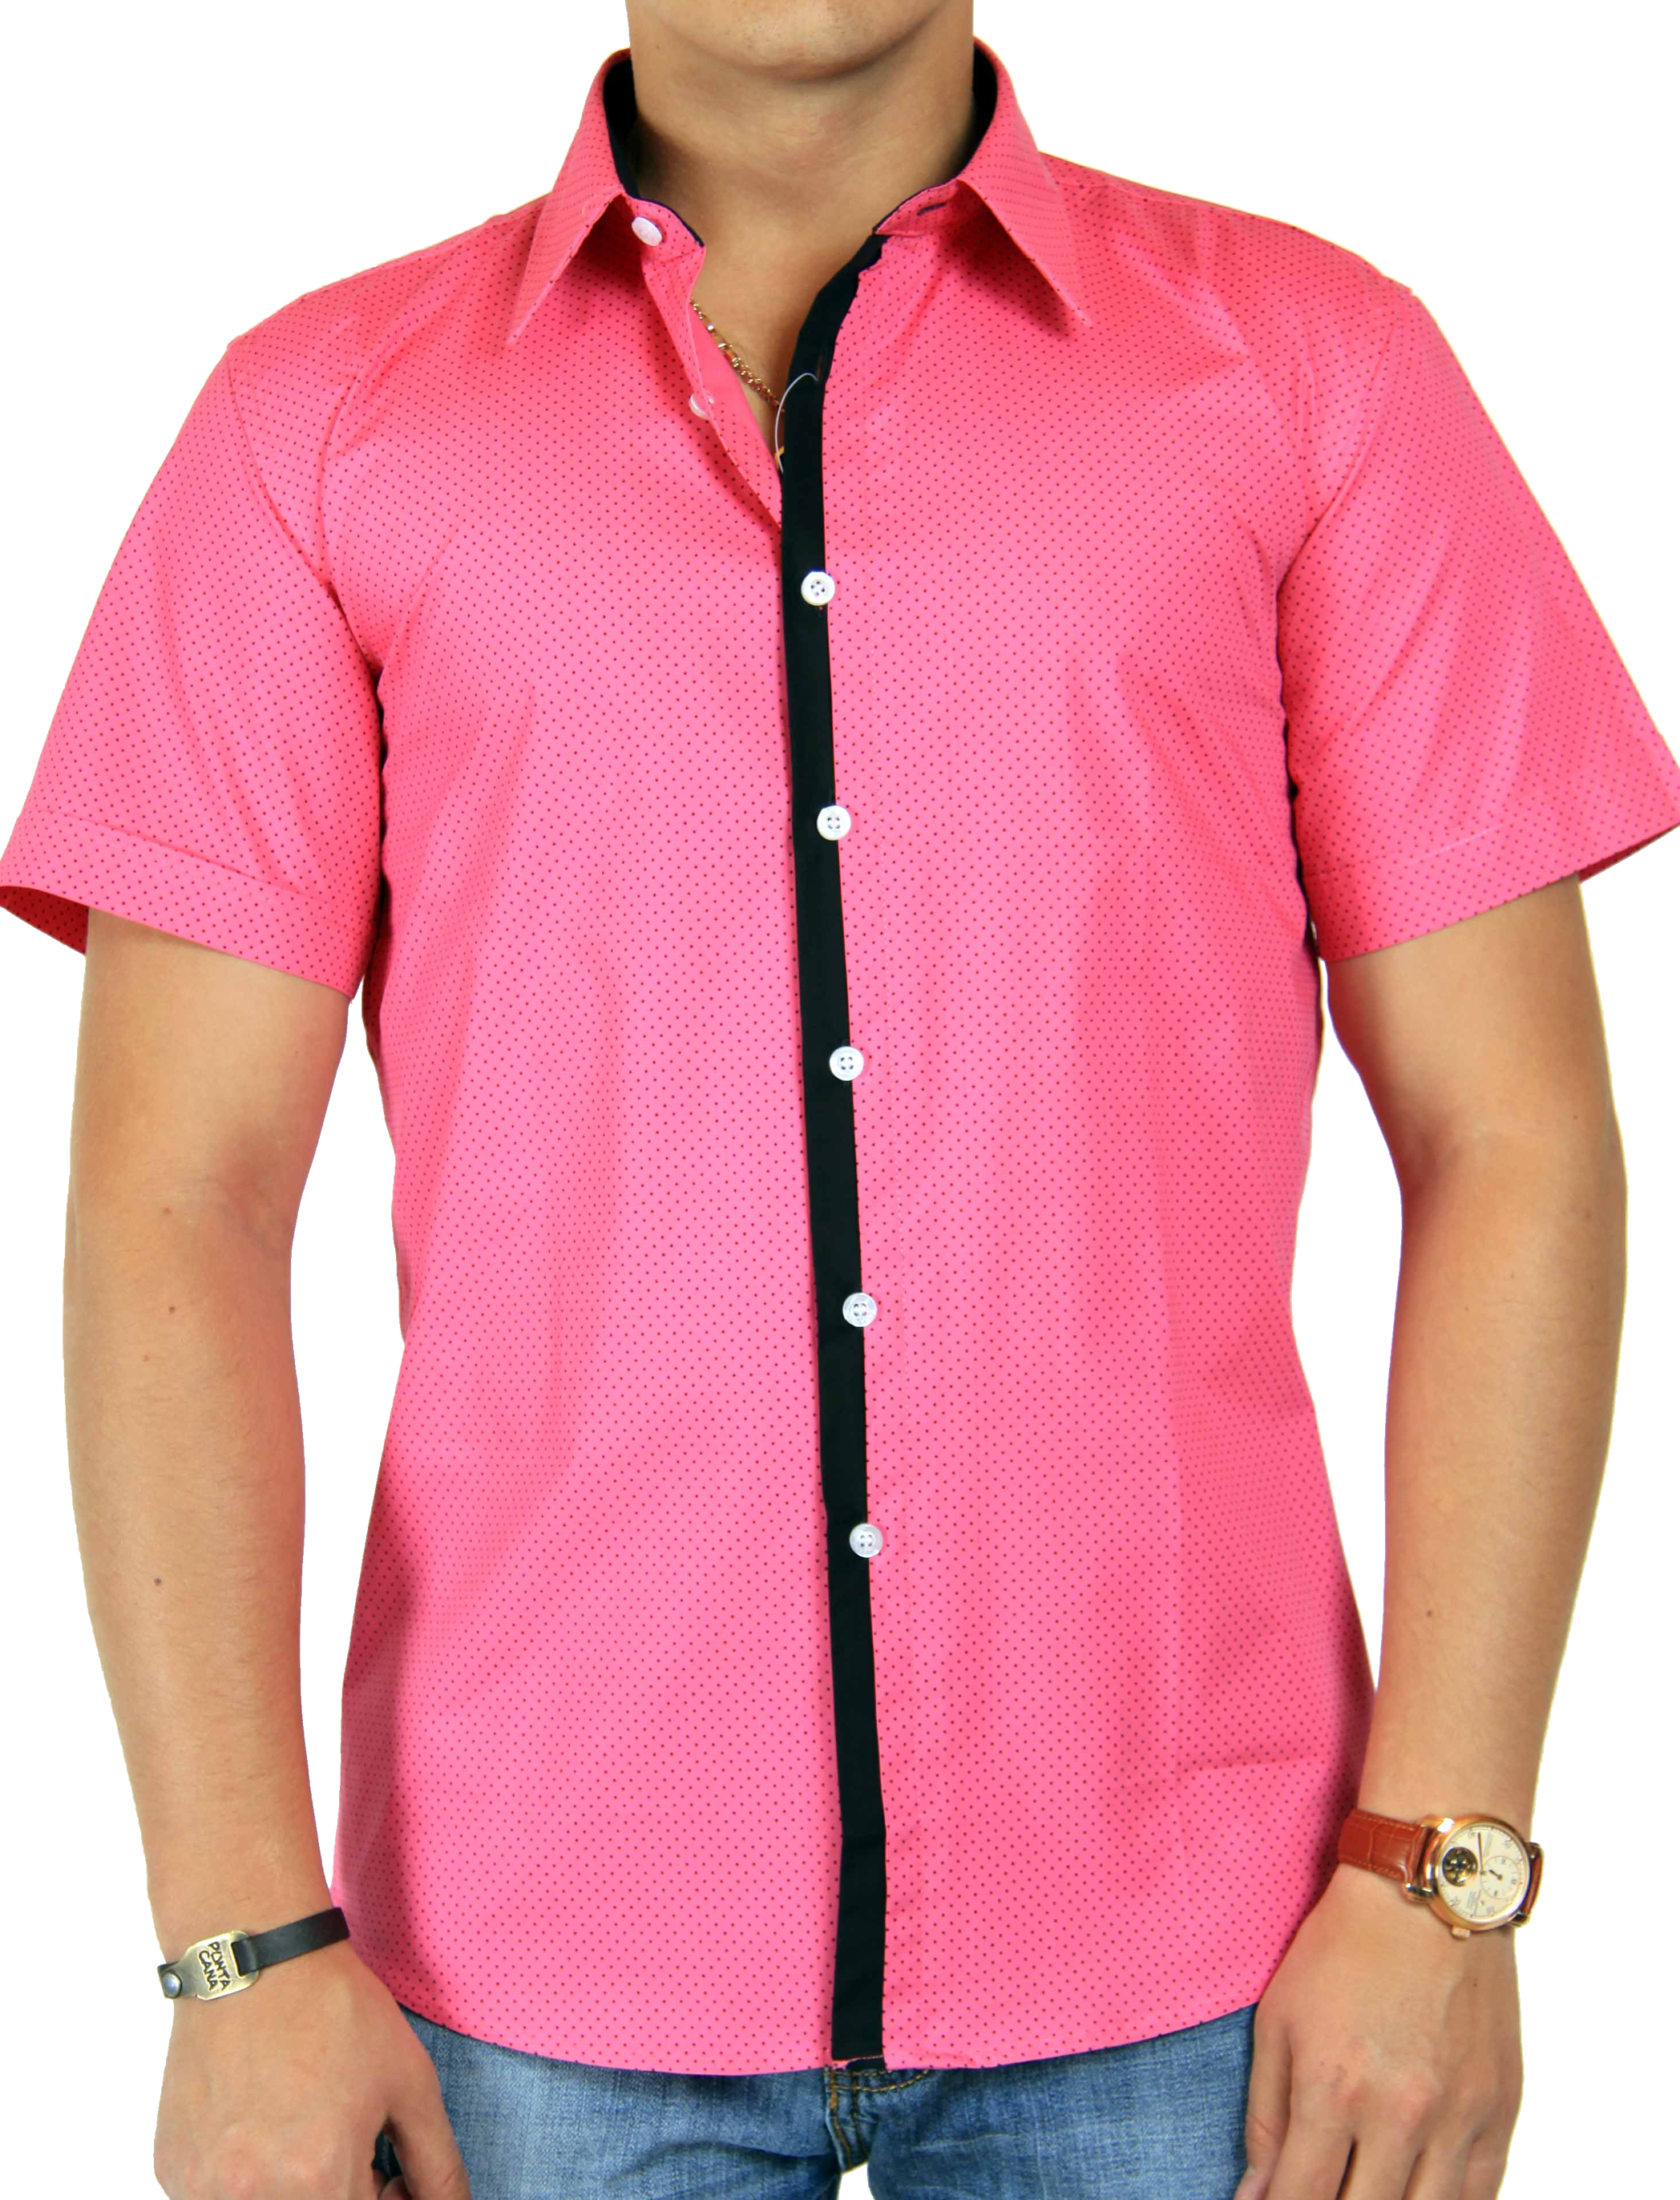 Pink dress shirt PNG image